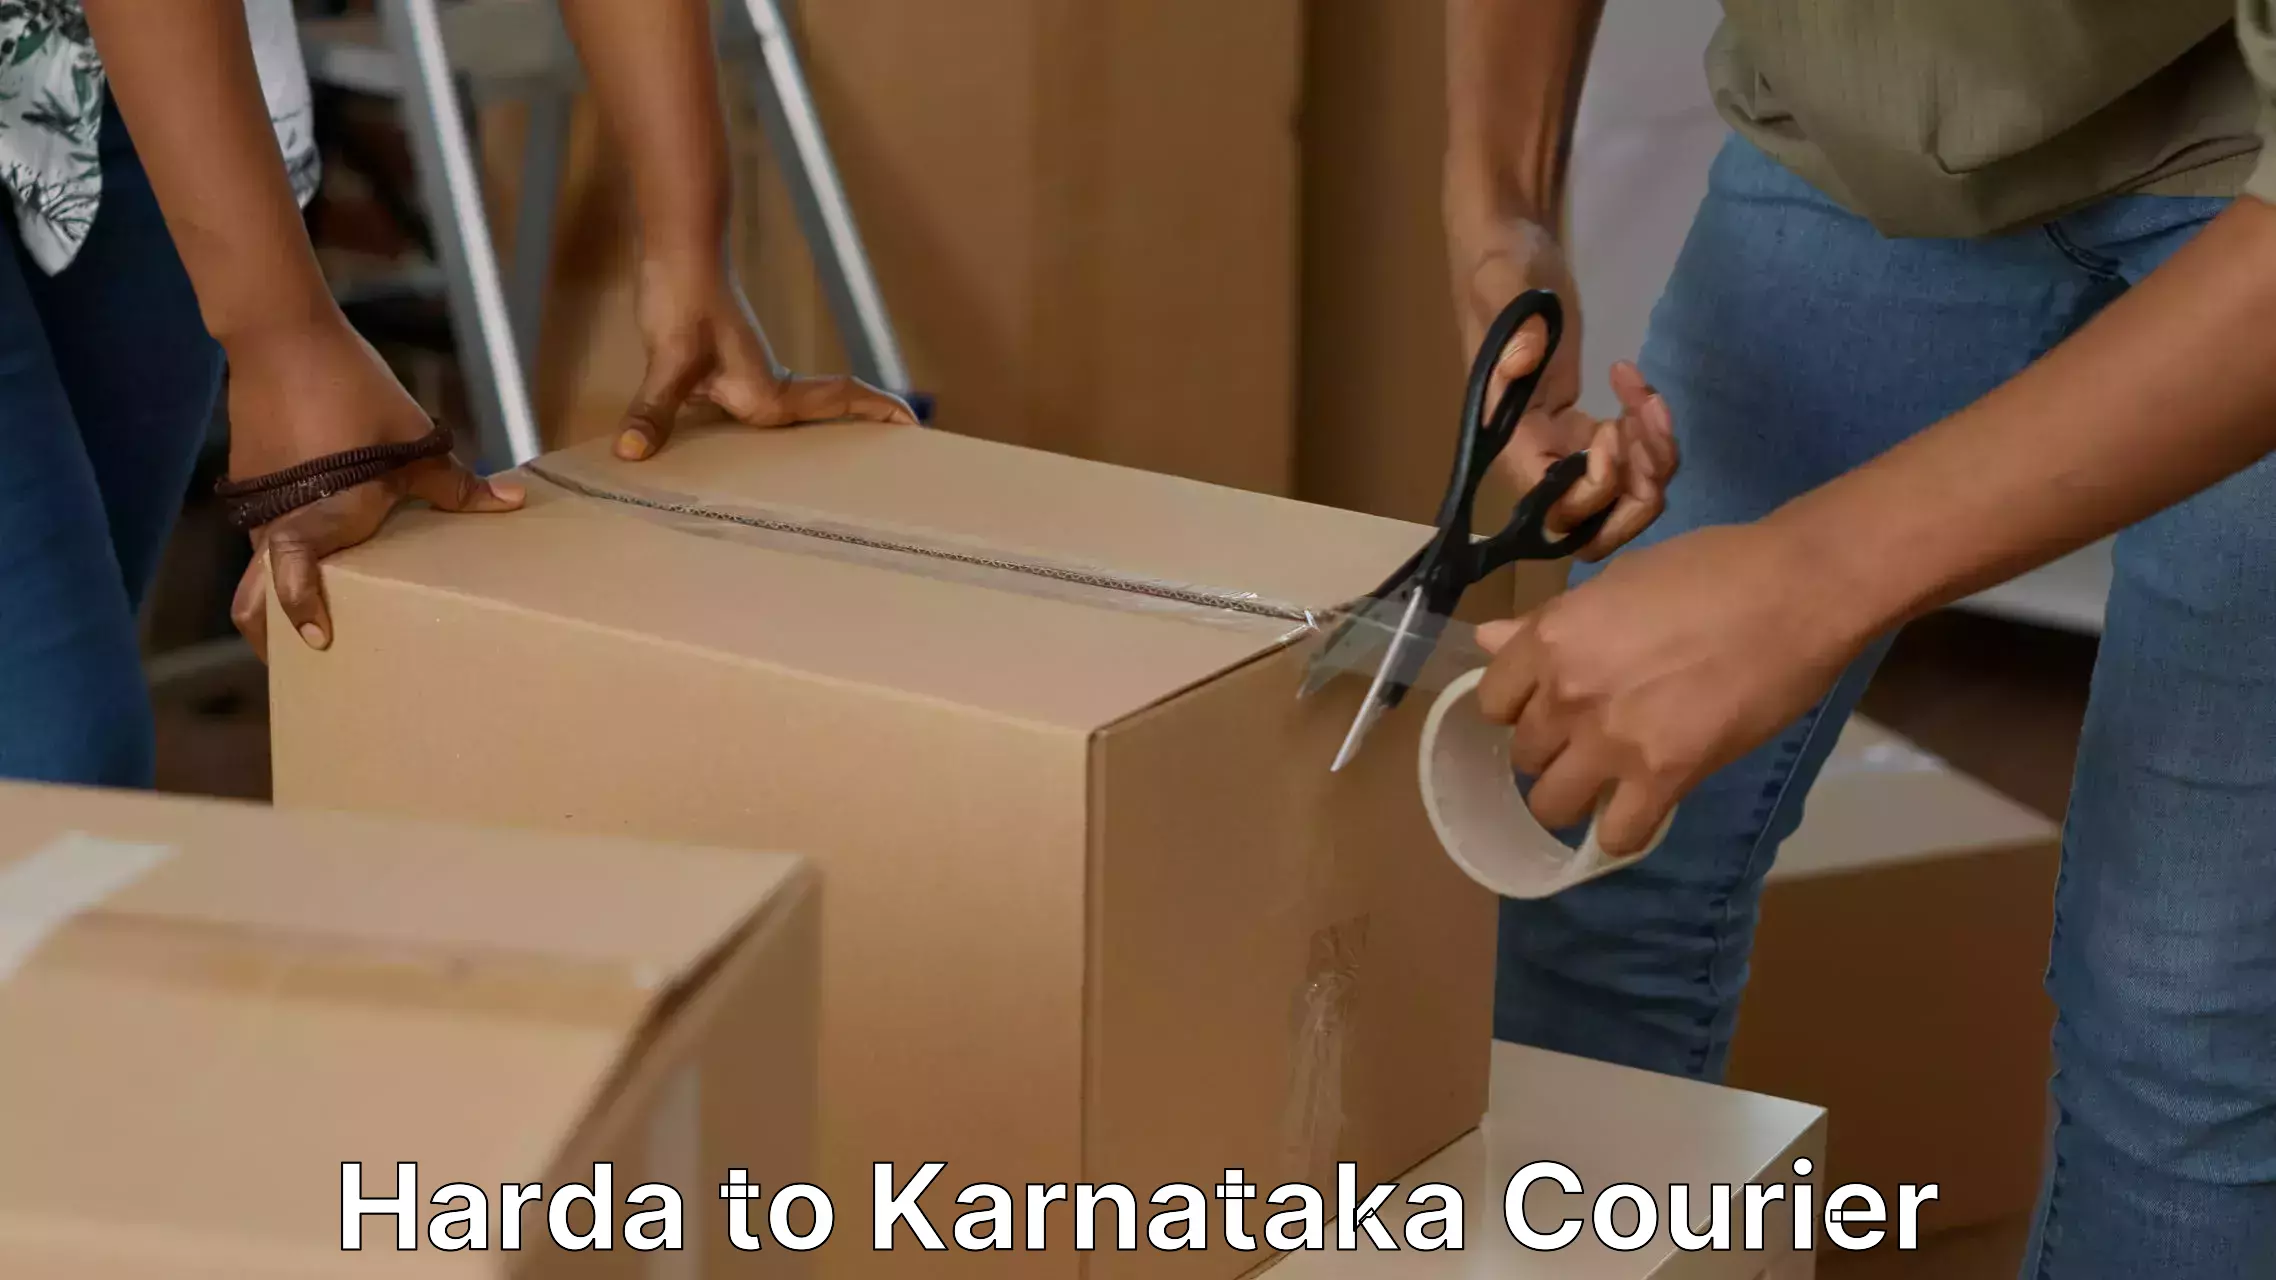 Reliable household moving Harda to Karnataka